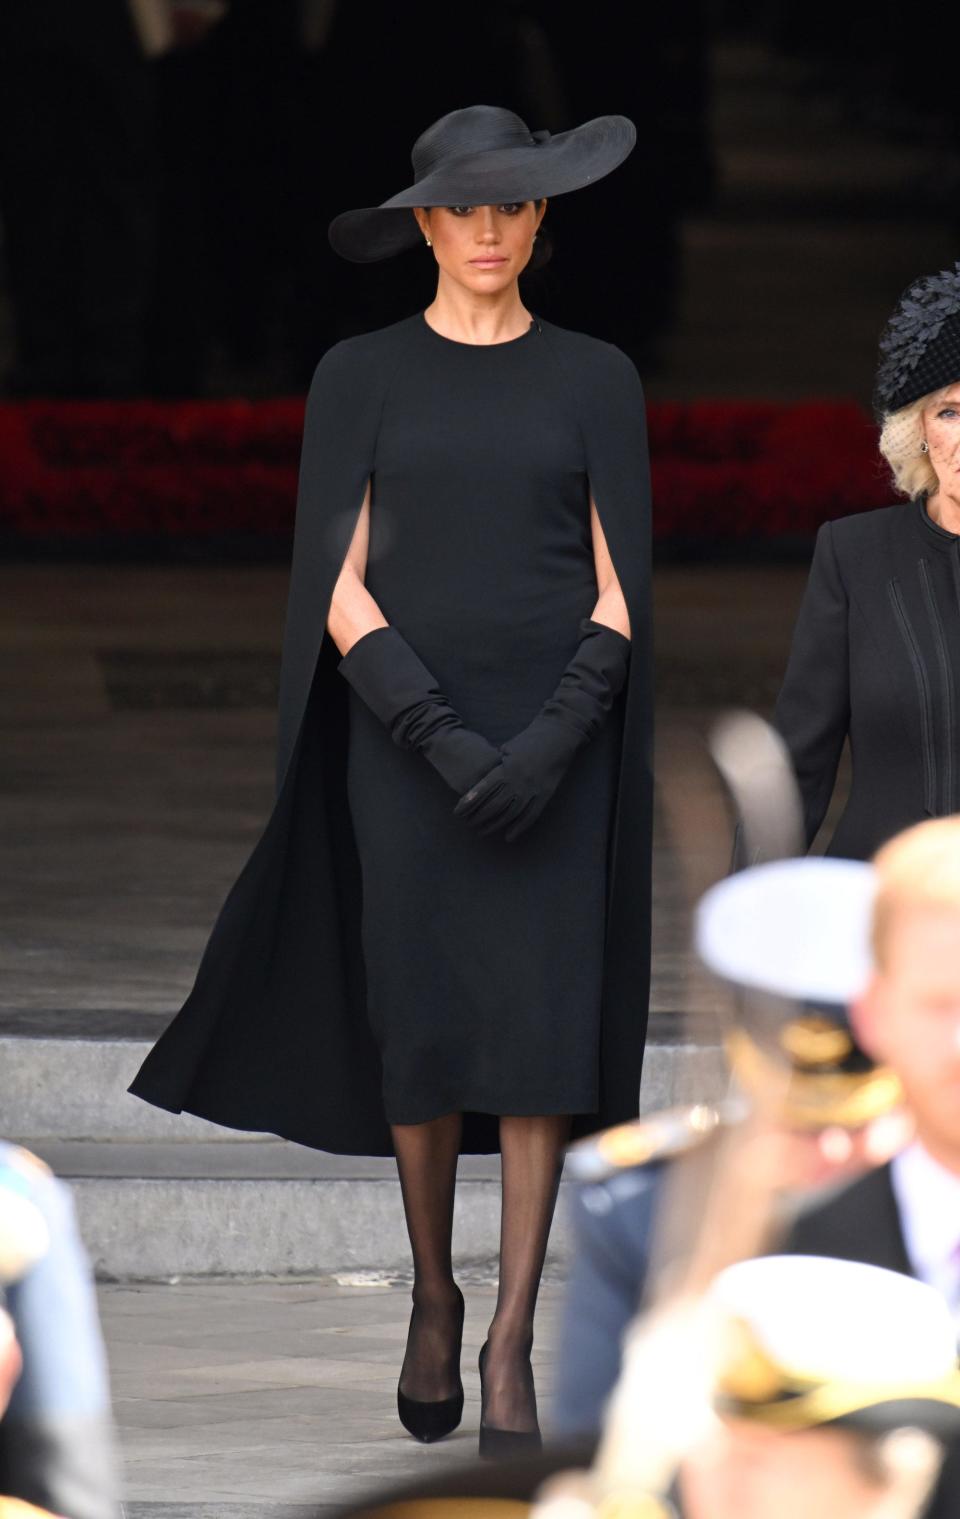 Meghan Markle walks in a black dress at Queen Elizabeth II's funeral.